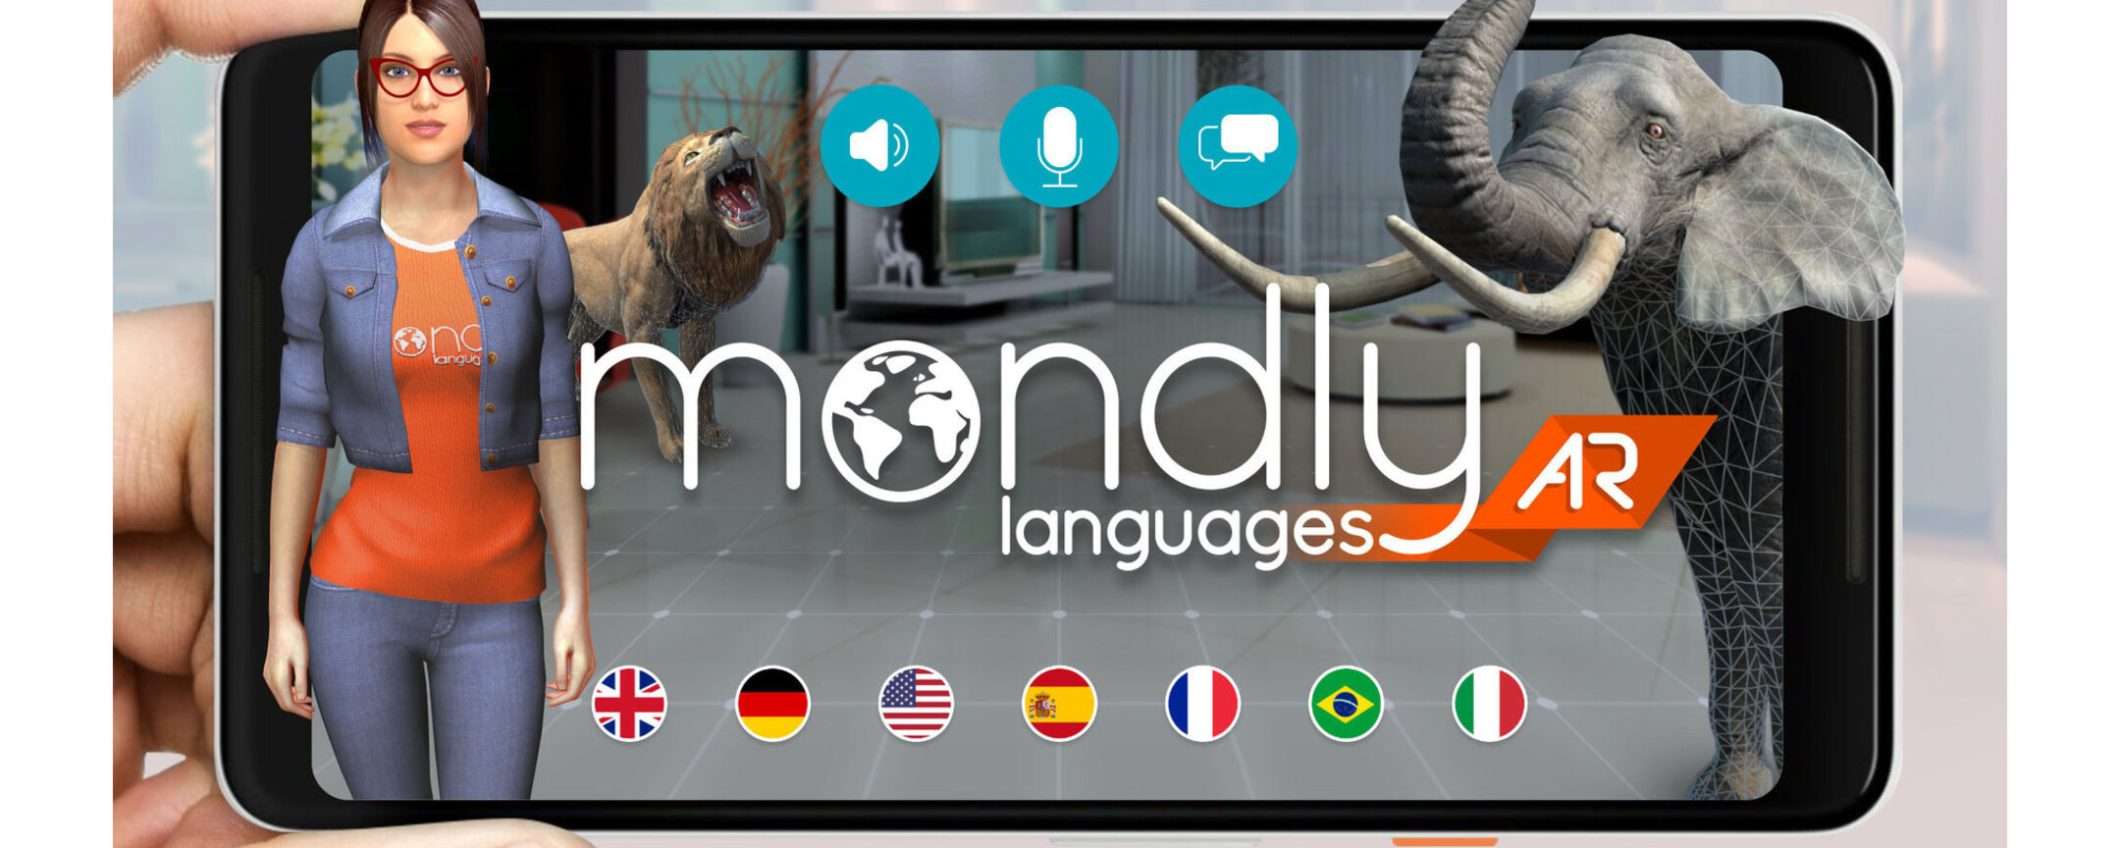 Impara 41 lingue per sempre con Mondly: il regalo perfetto per San Valentino